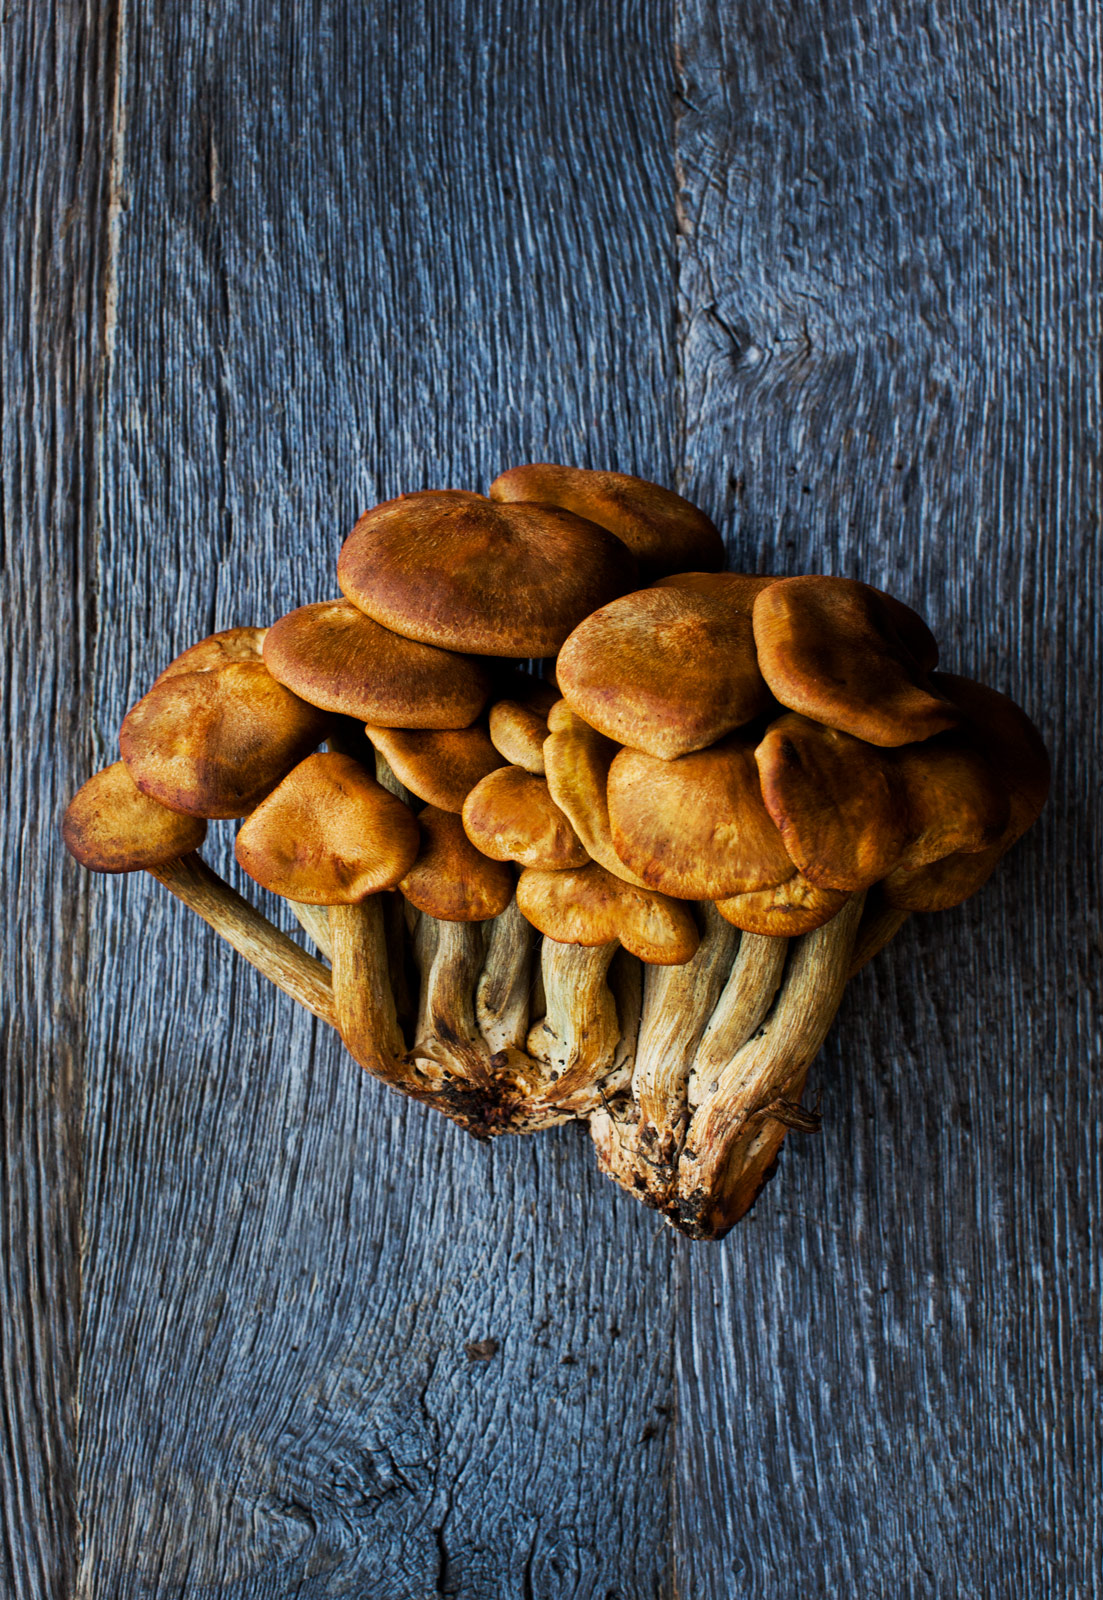 Mushrooms_7160_web